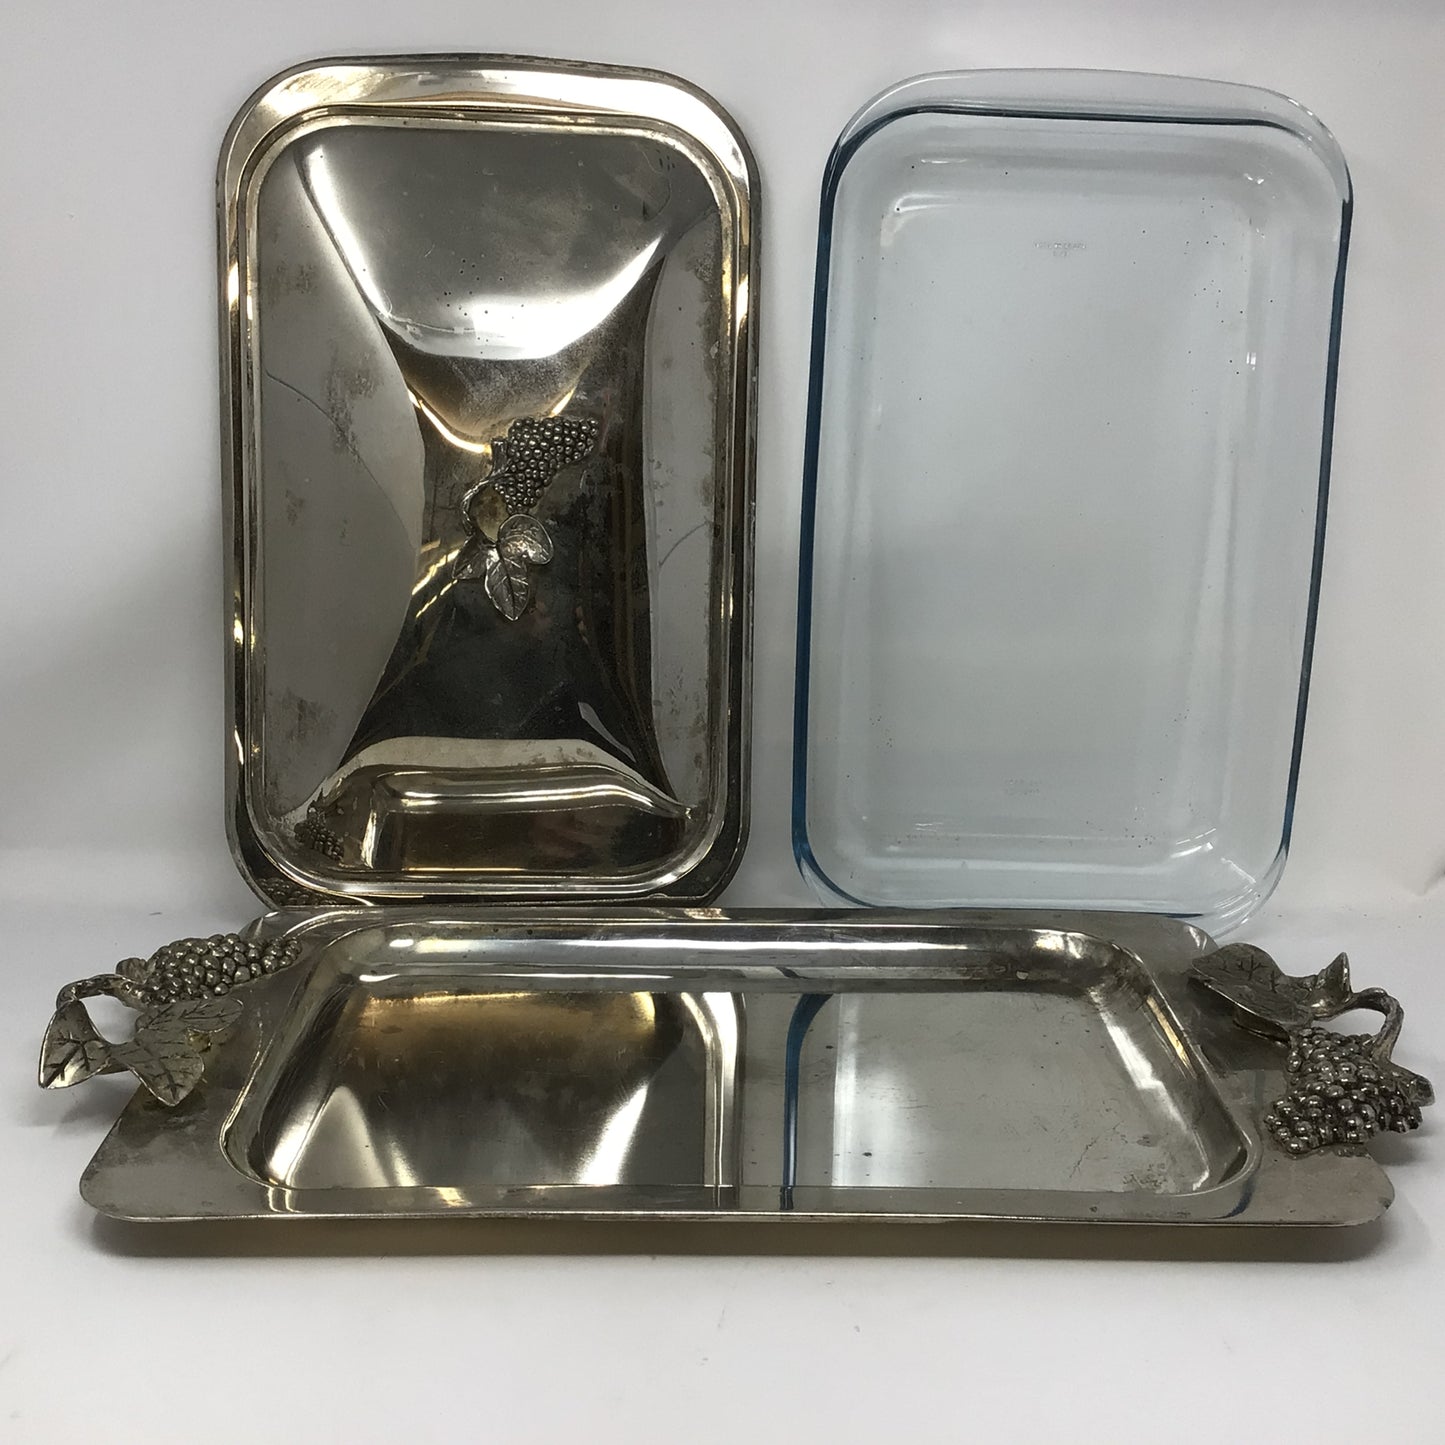 Vintage Godinger Silver Plated Serving Dish